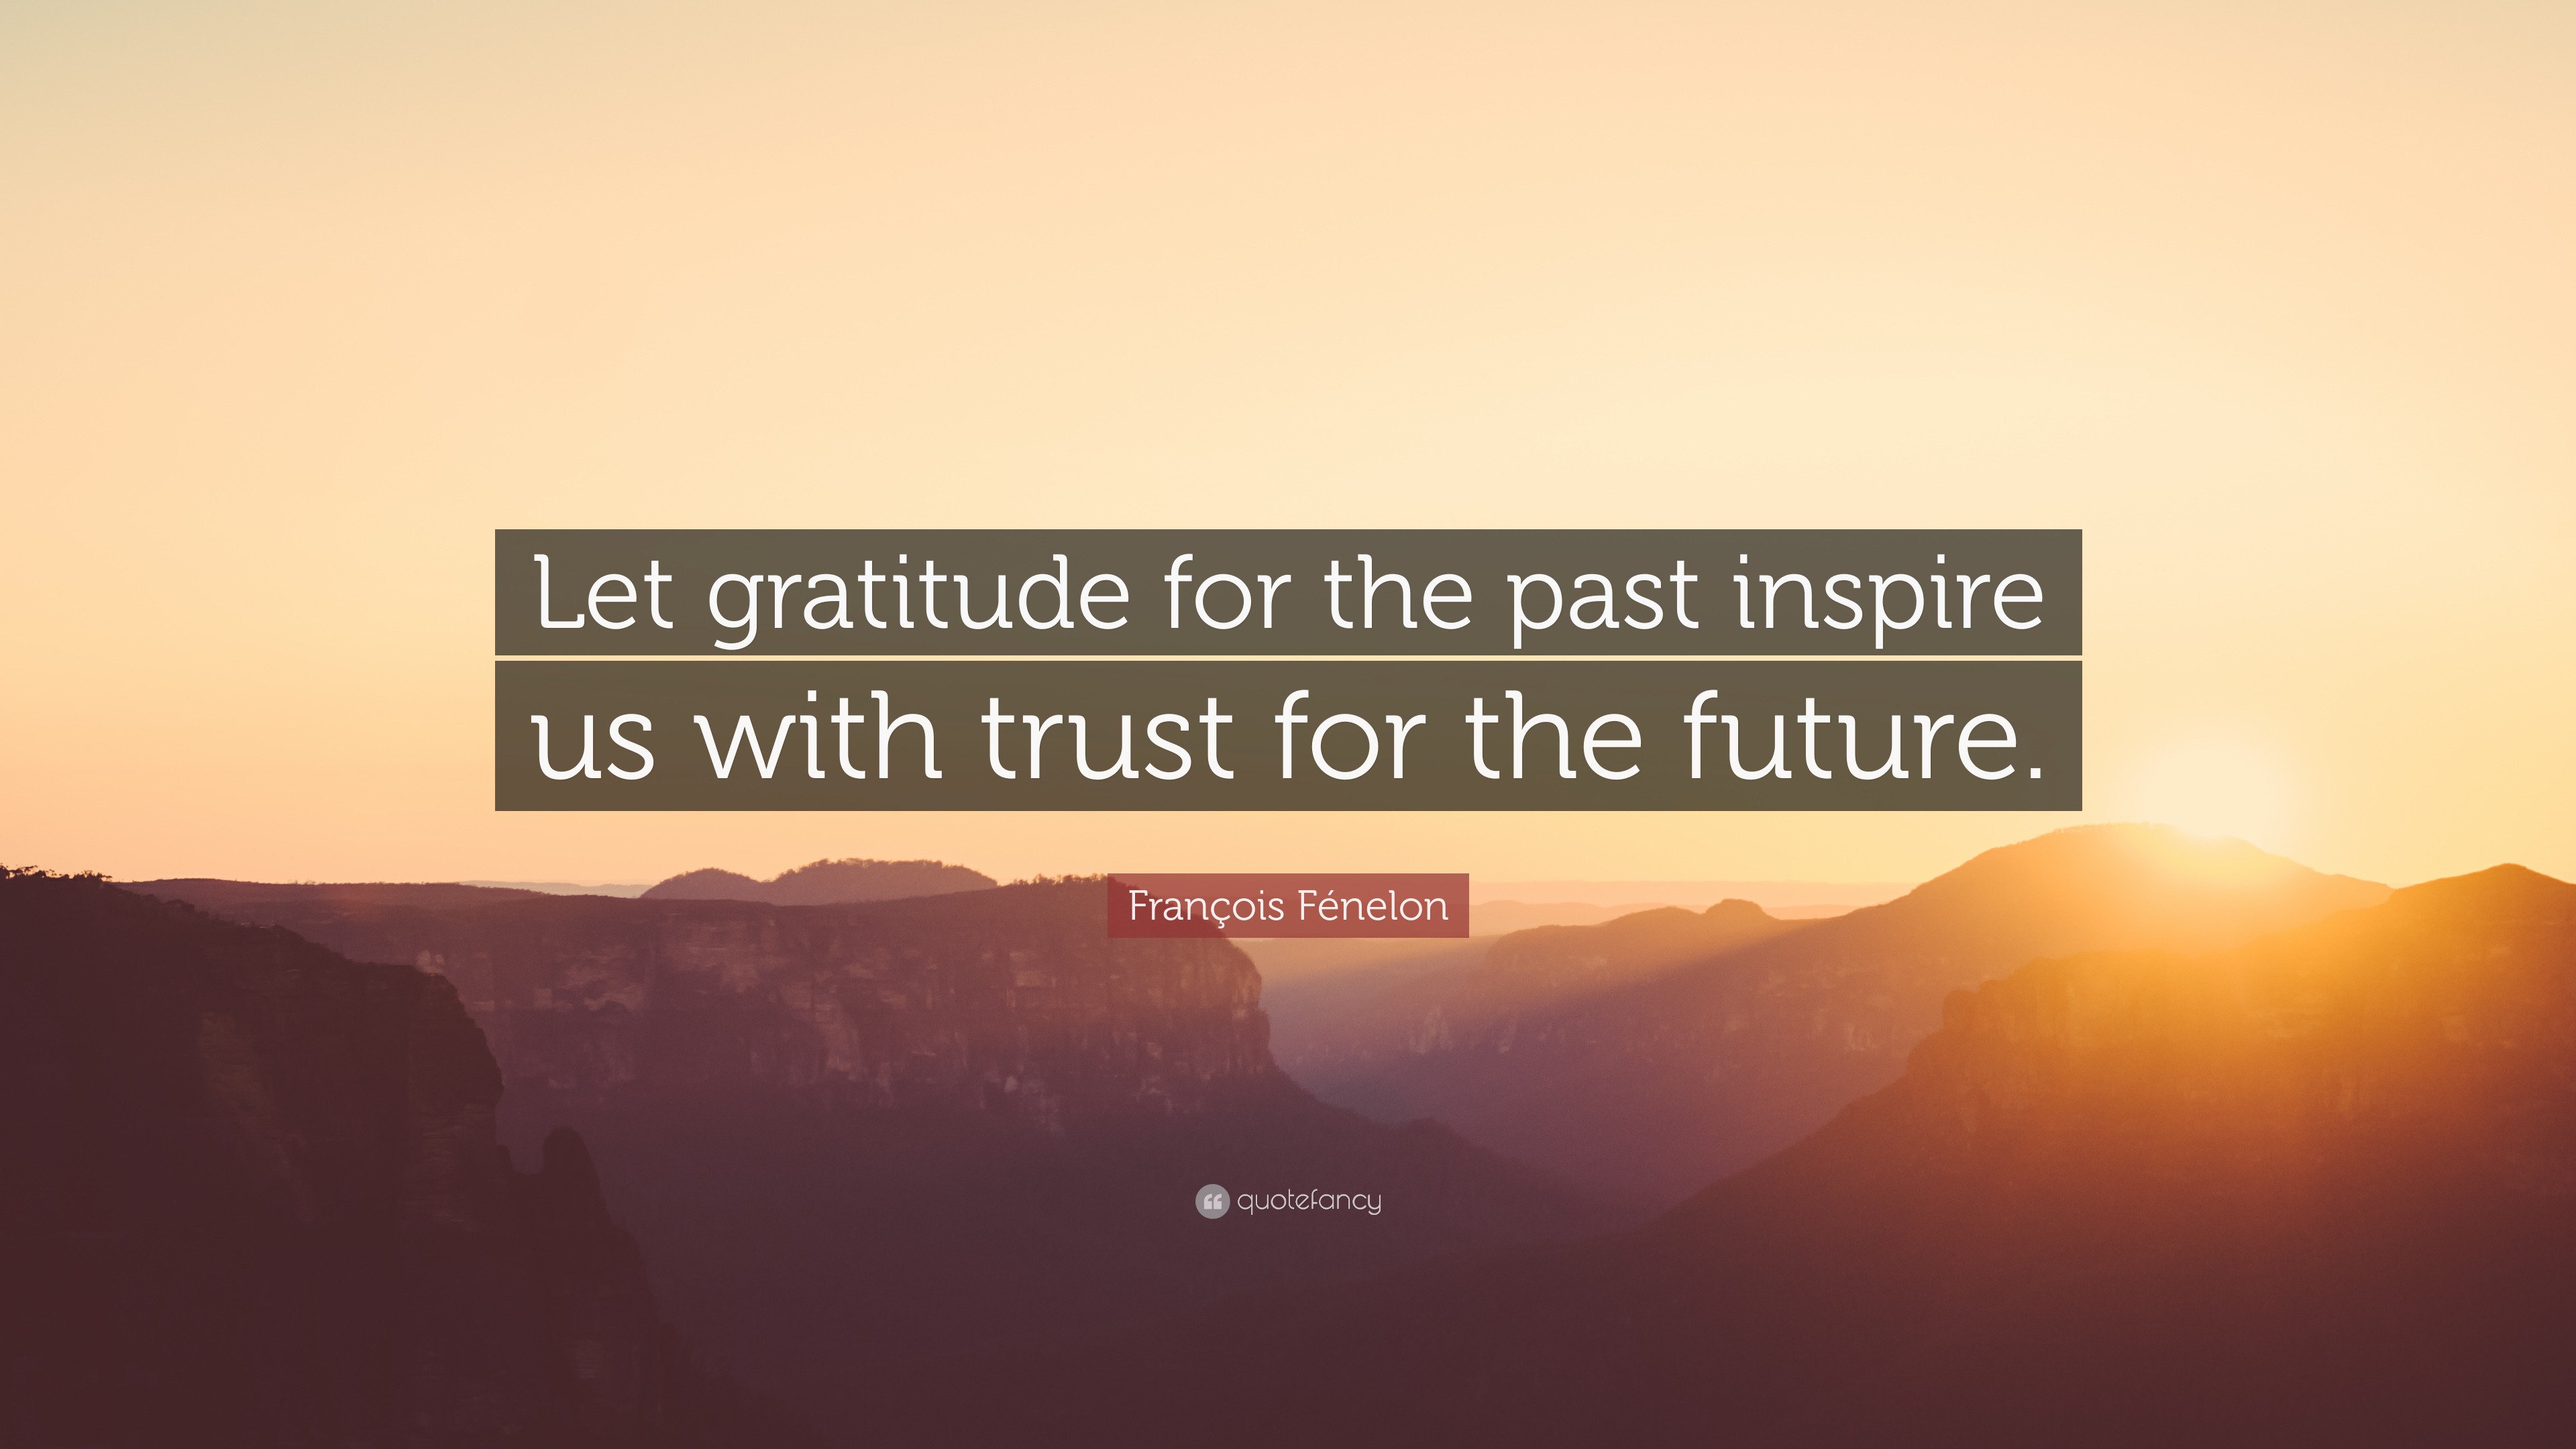 François Fénelon Quote: “Let gratitude for the past inspire us with